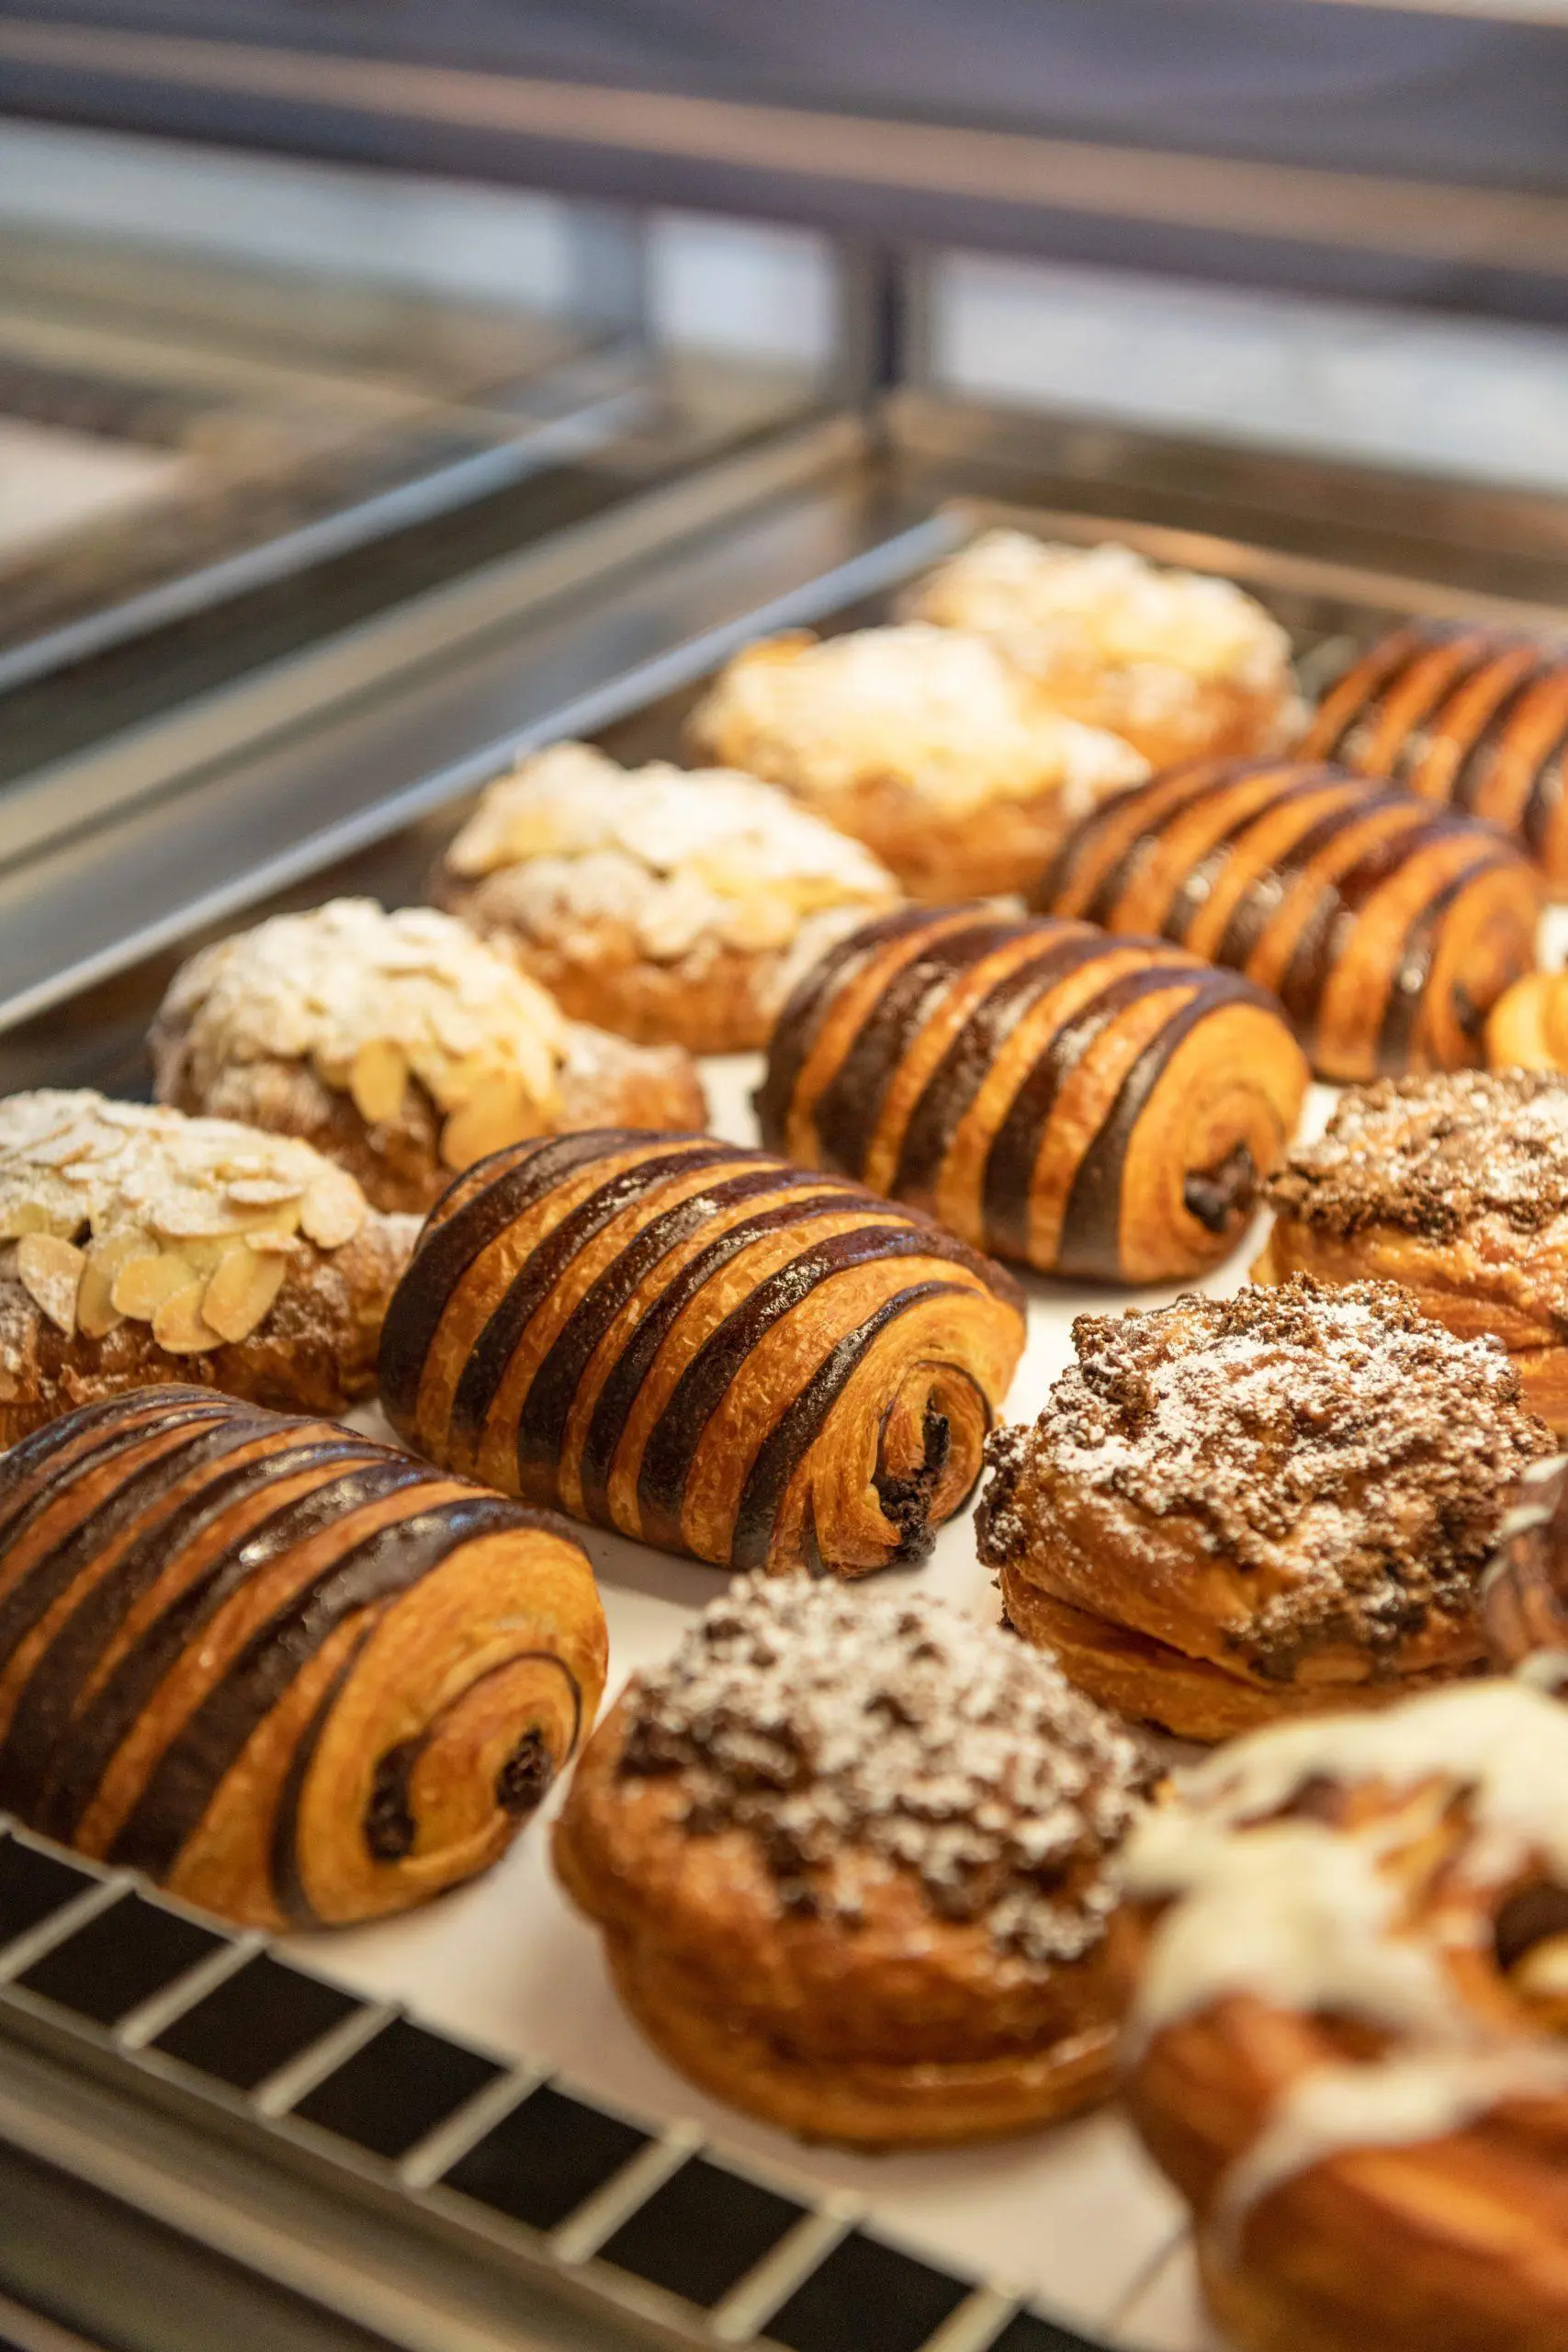 الحلوى المخبوزة في مطعم ومخبز بيانكا العالمي في فيا الرياض - كول انك